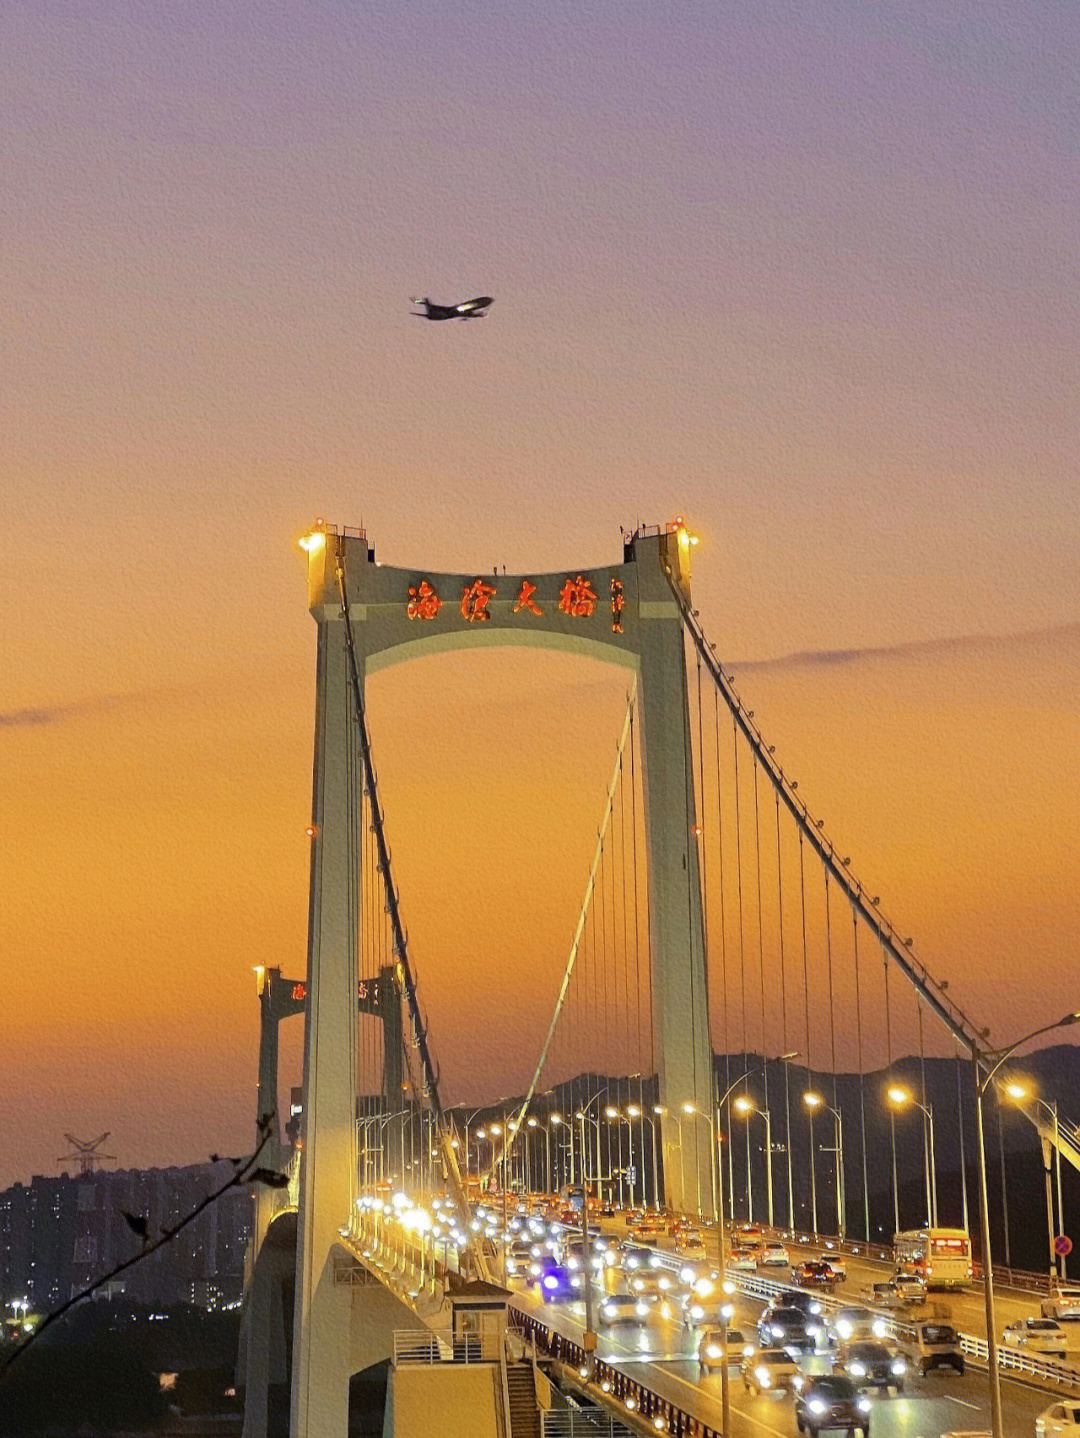 海沧大桥显得格外浪漫治愈,时不时还有飞机飞过哦~91位置:厦门东渡